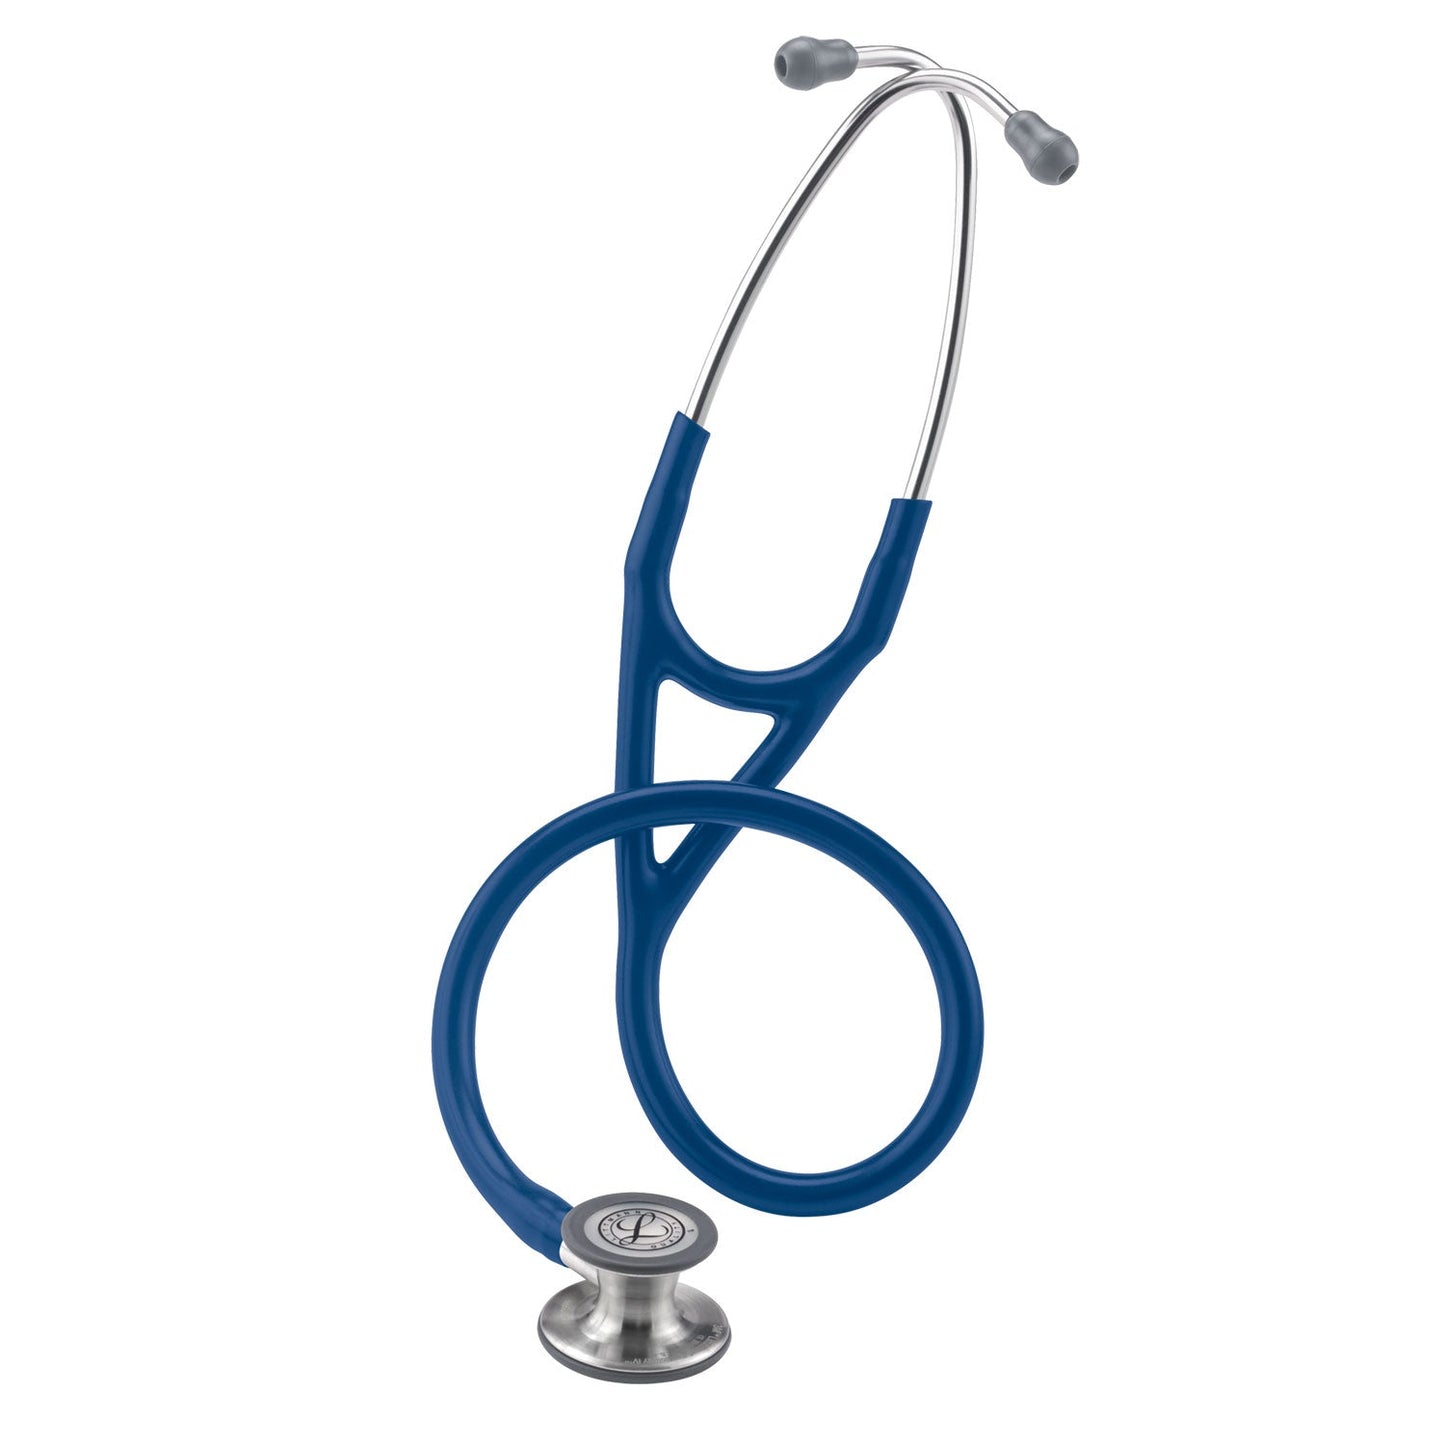 Fonendoscopio diagnóstico 3M™ Littmann® Cardiology IV™, campana de acabado estándar, tubo azul marino y vástago y auricular de acero inoxidable, 68,5 cm cm, 6154